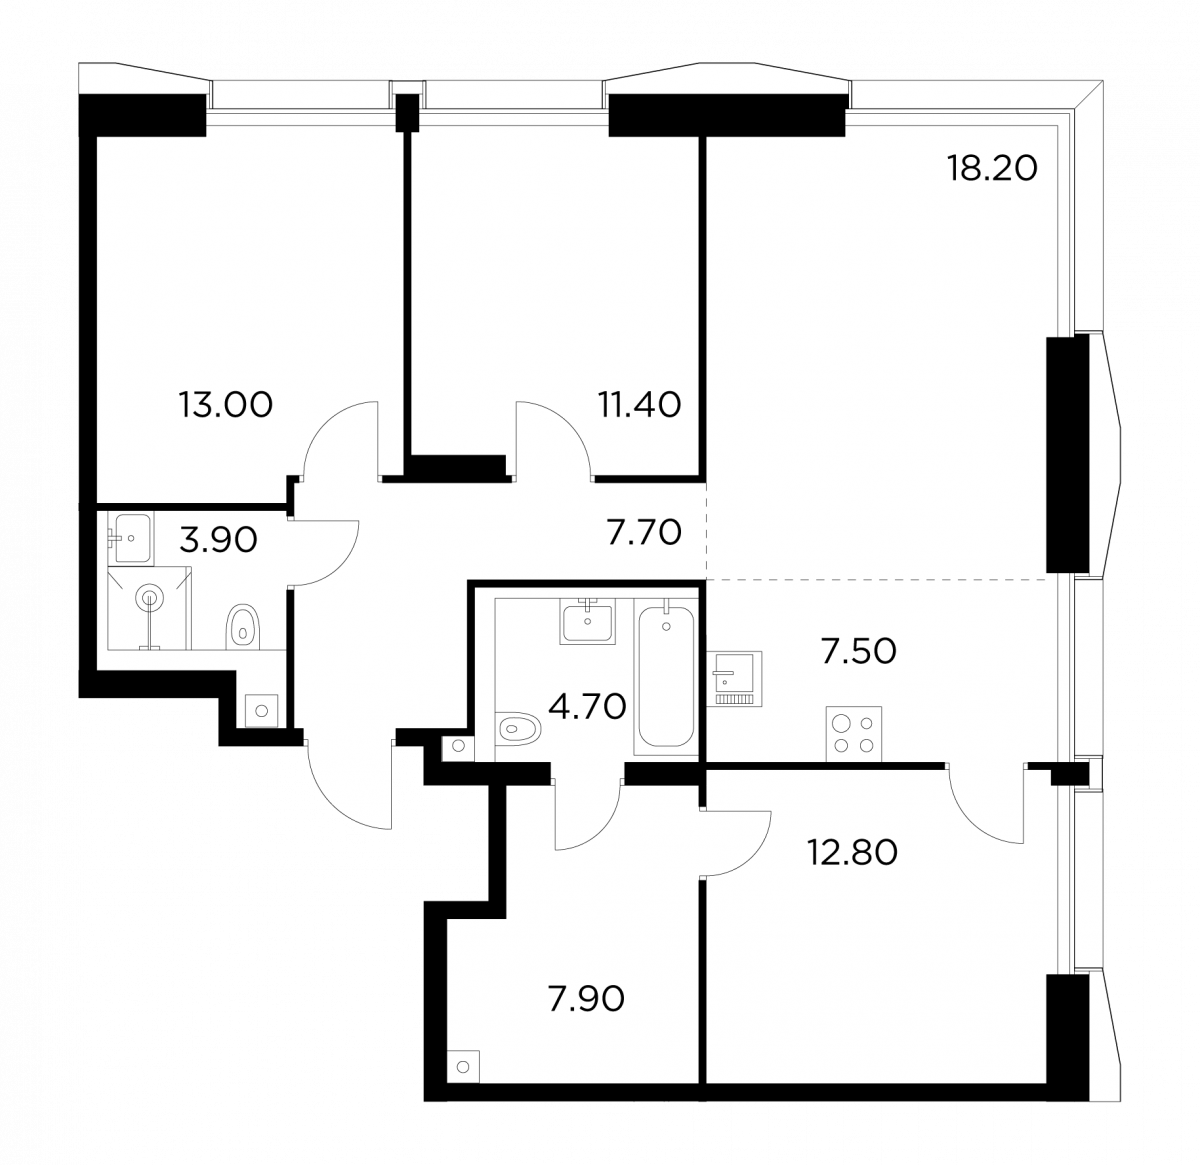 Планировка 4-комнатная квартира в ЖК INJOY (Инджой)